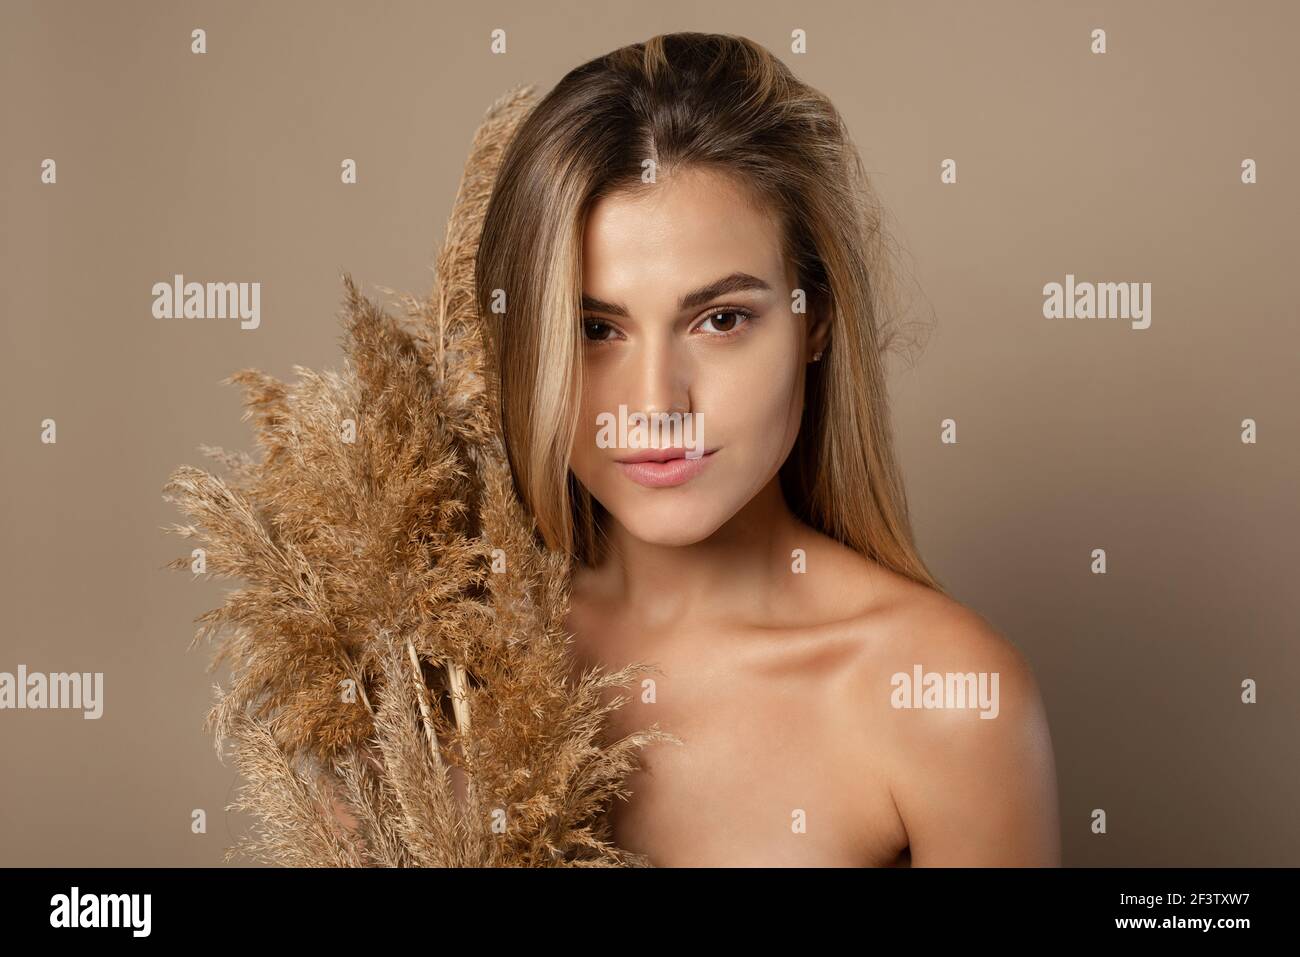 Encantadora joven modelo femenino con pelo suelto sostiene hierba de pampas secas en sus manos. El concepto de cosméticos naturales a partir de granos de trigo. Cuidado de la piel. Foto de stock